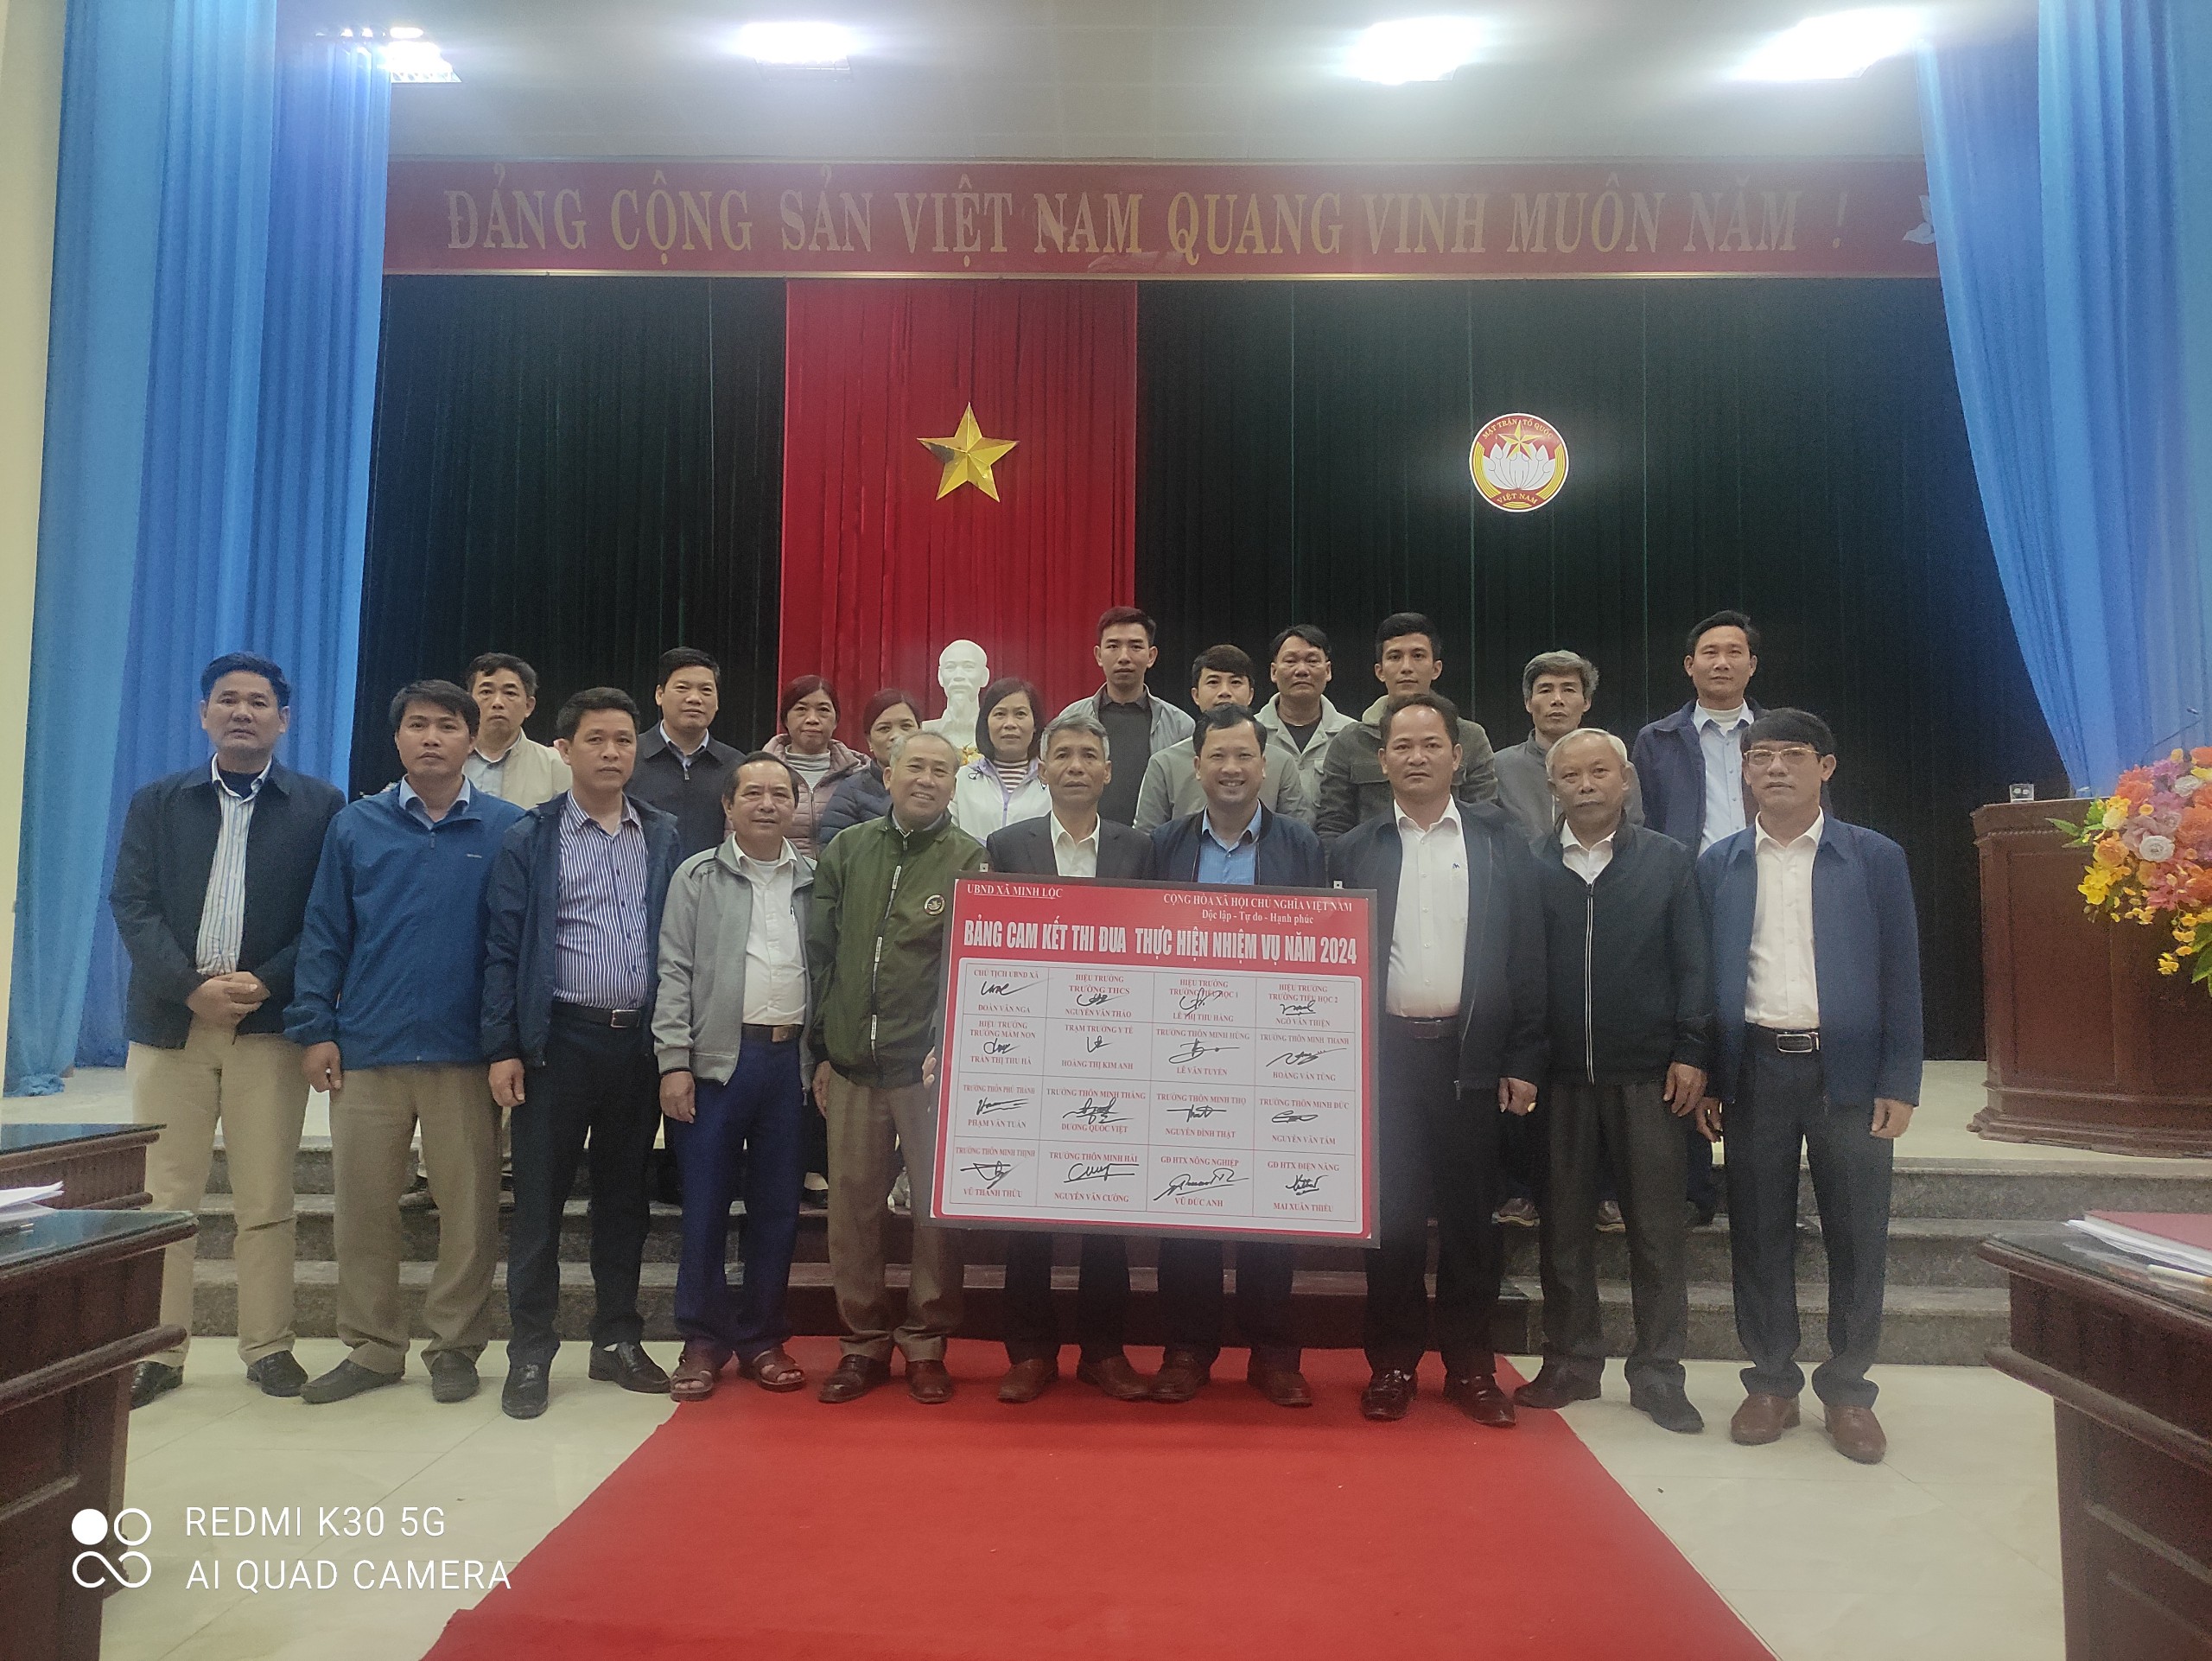 Uỷ ban nhân dân xã Minh lộc tổ chức hội nghị triển khai công tác xây dựng xã Nông thôn mới nâng cao và tổ chức ký giao ước thực hiện các chỉ tiêu phát triển Kinh tế - xã hội - QPAN.